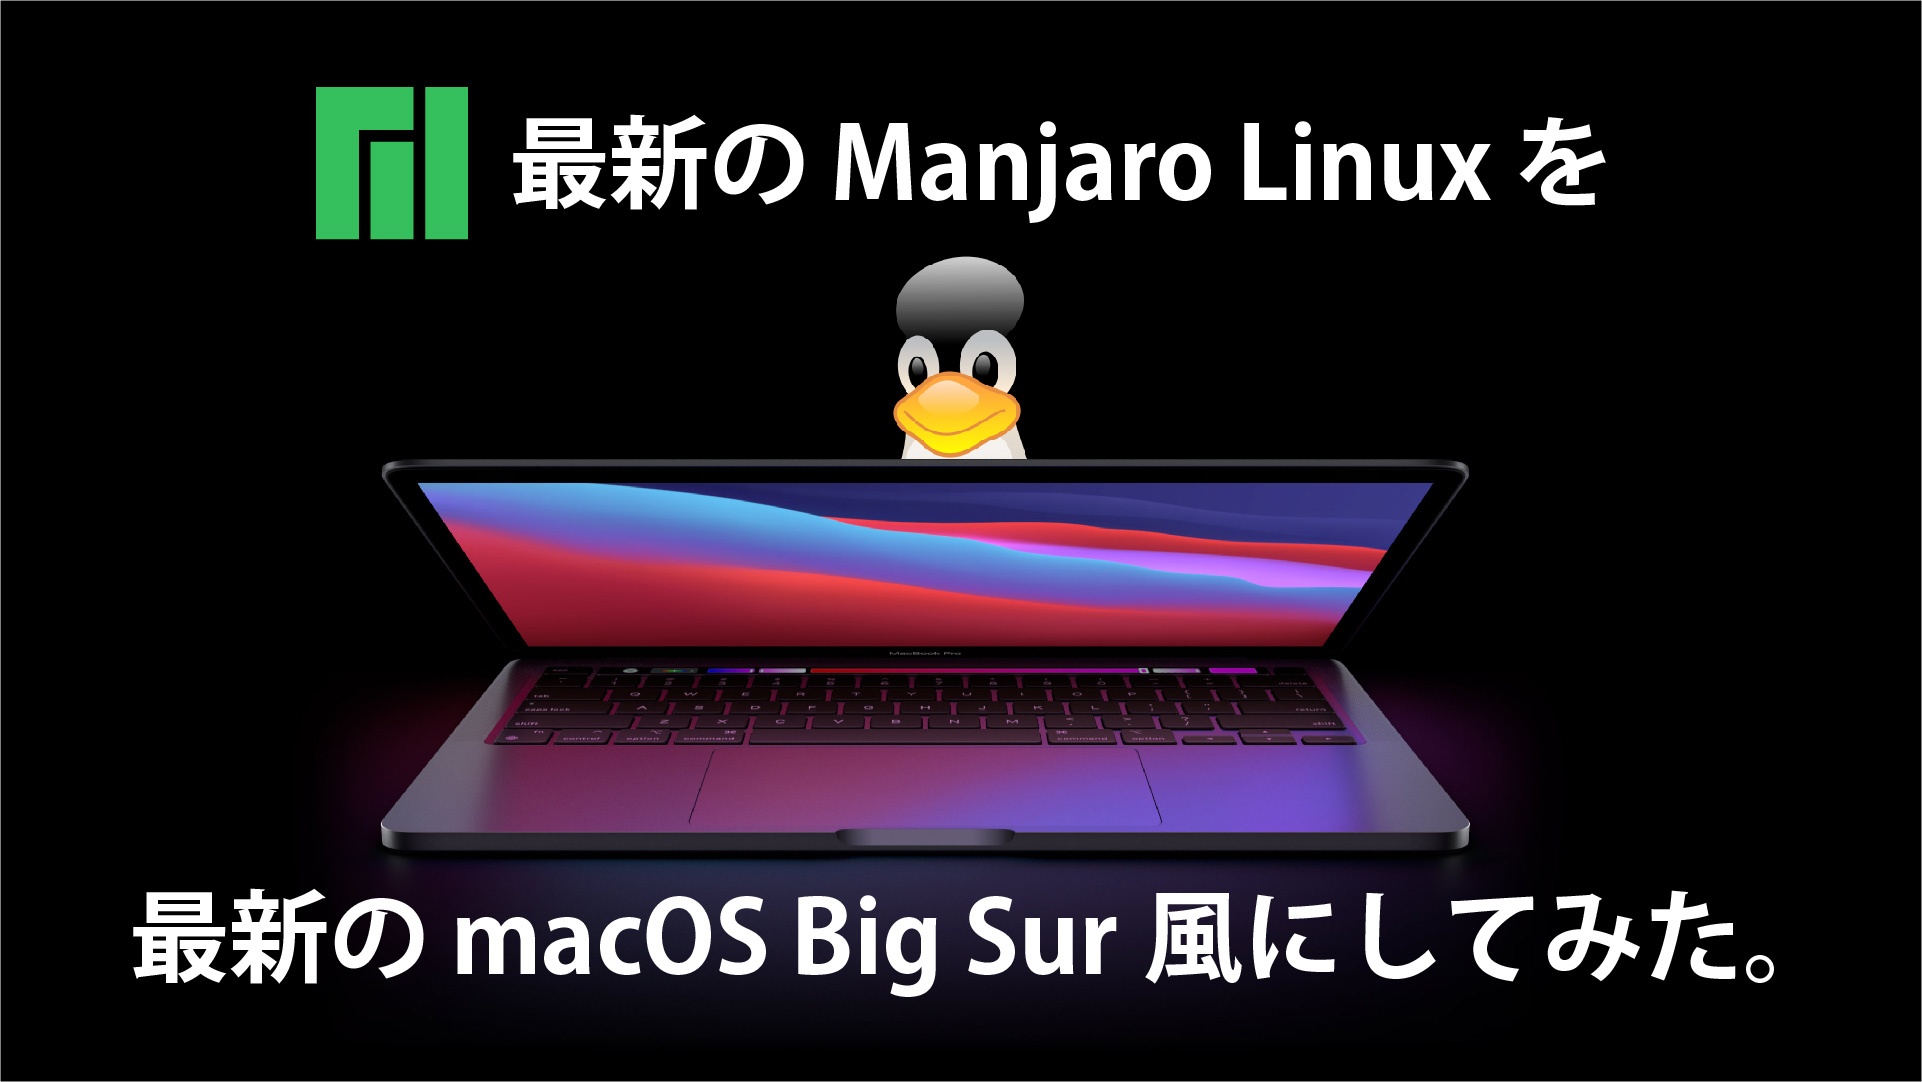 最新の Manjaro Linux を最新の macOS 風にカスタマイズしてみた。